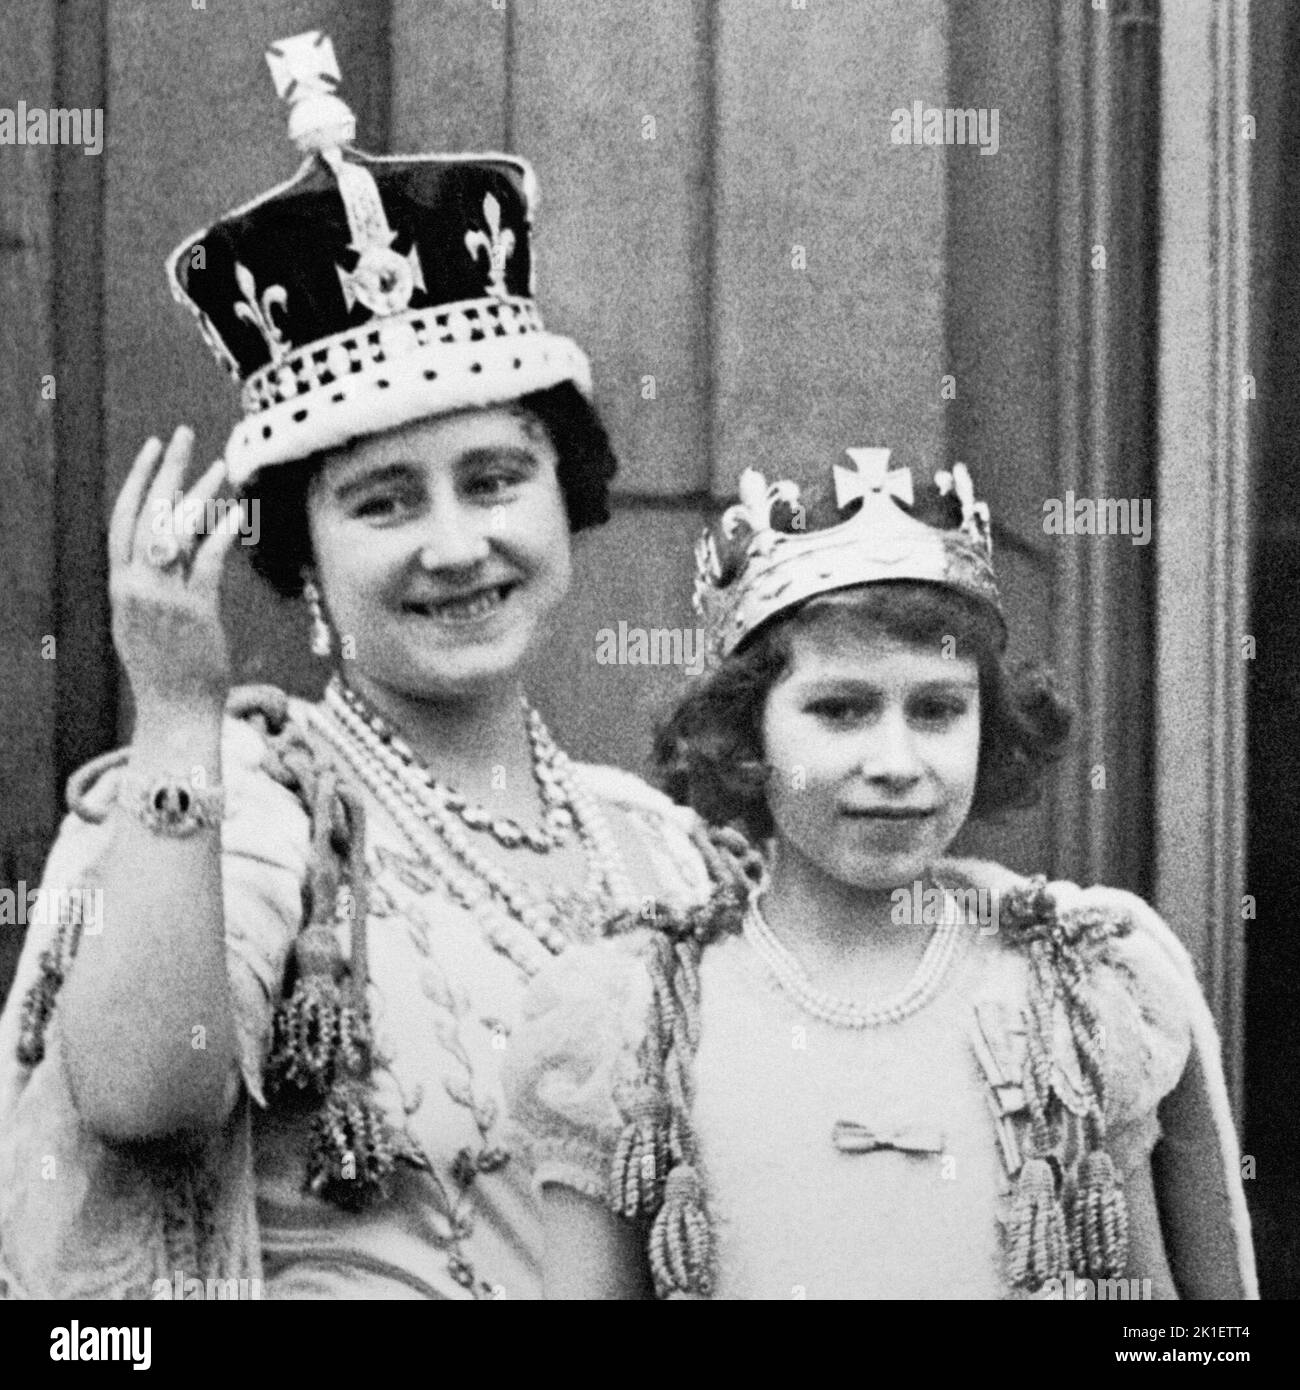 Foto de archivo fechada el 12/05/1937 de la Reina Isabel (la Reina Madre) con su hija mayor la Princesa Isabel (ahora Reina Isabel II) en el balcón del Palacio de Buckingham, después de la coronación del rey Jorge VI Fecha de emisión: Domingo 18 de Septiembre de 2022.. El crédito de la foto debe decir: PA Wire Foto de stock